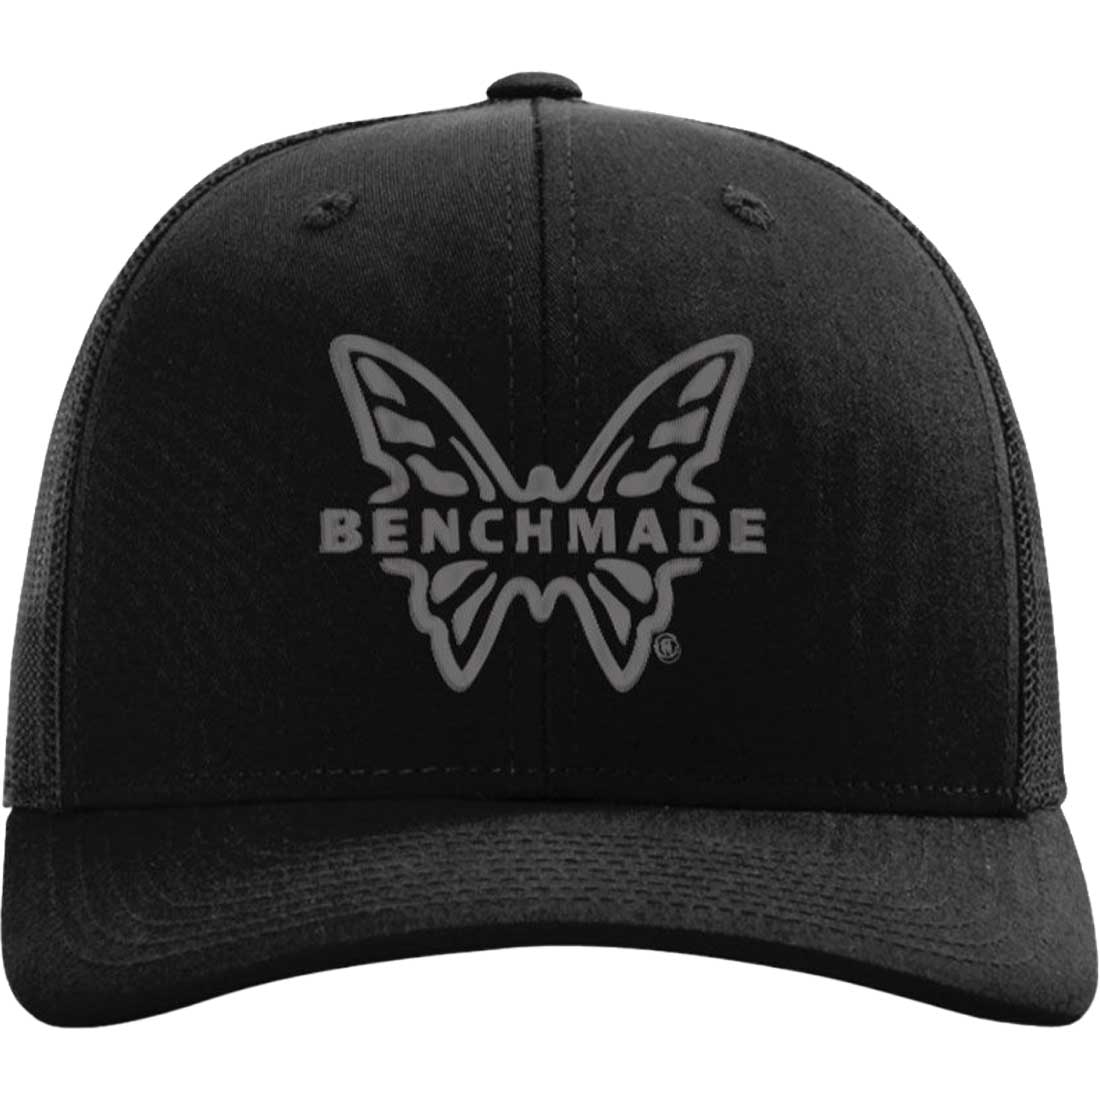 Benchmade Trucker Hat